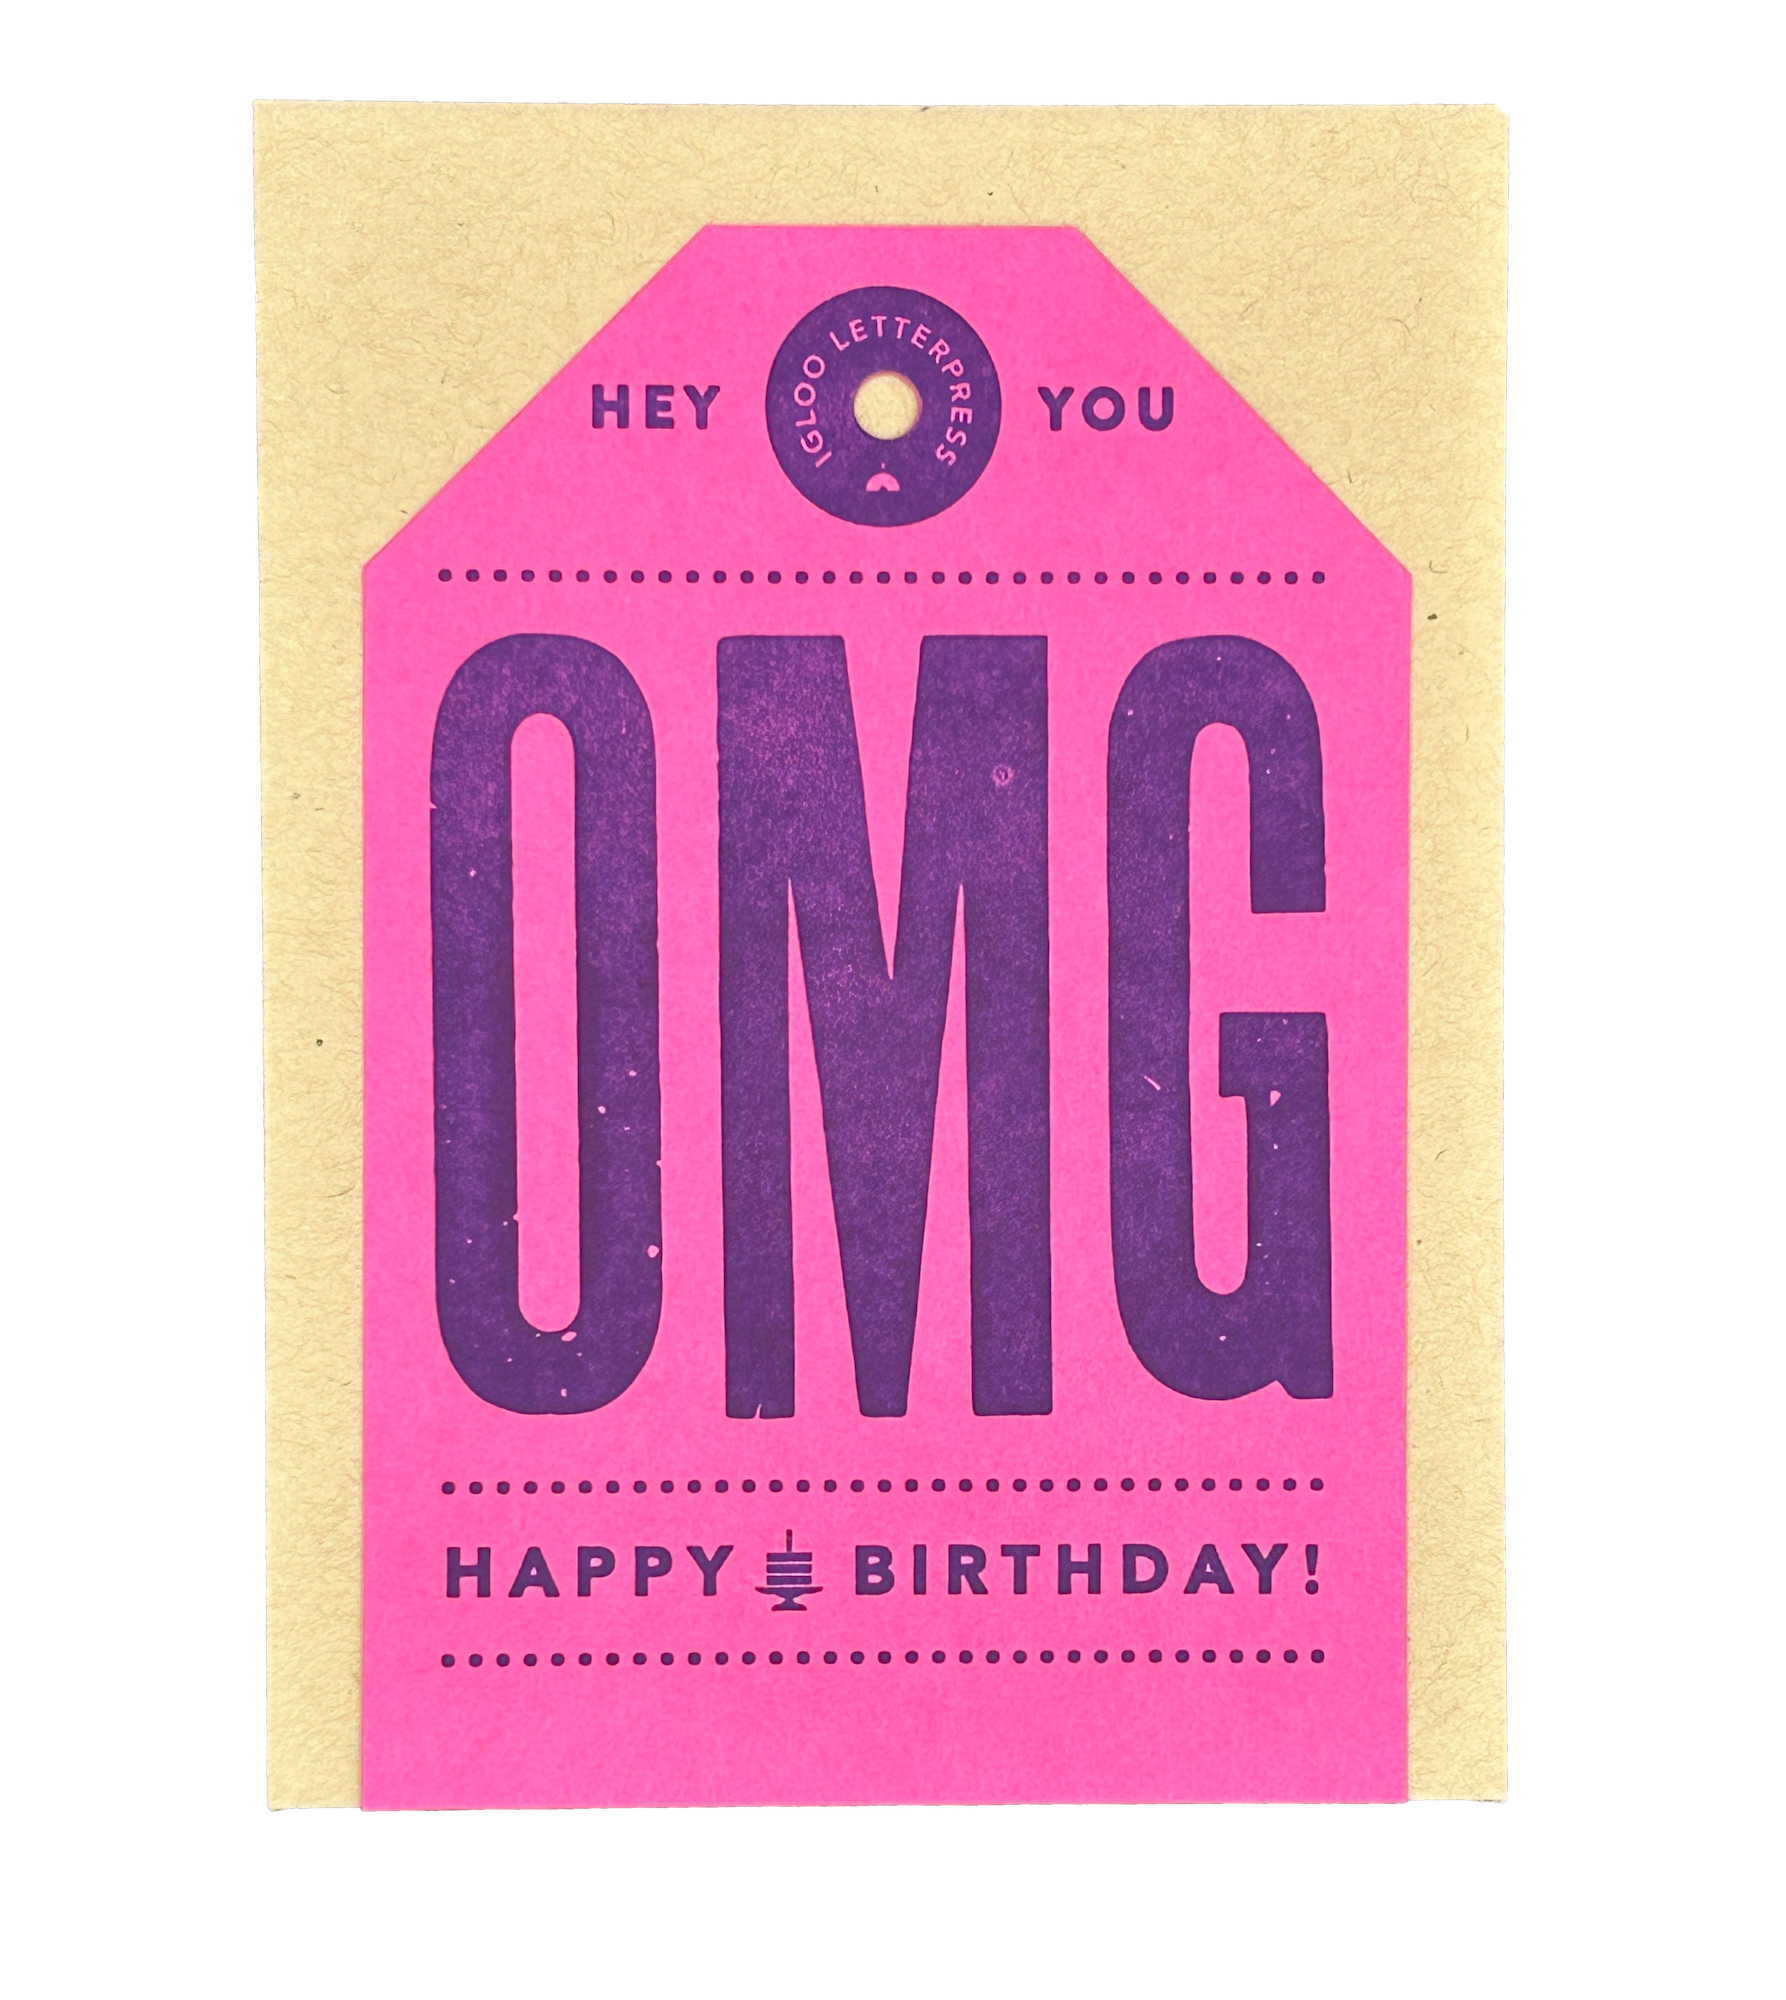 OMG Happy Birthday Tag Letterpress Card